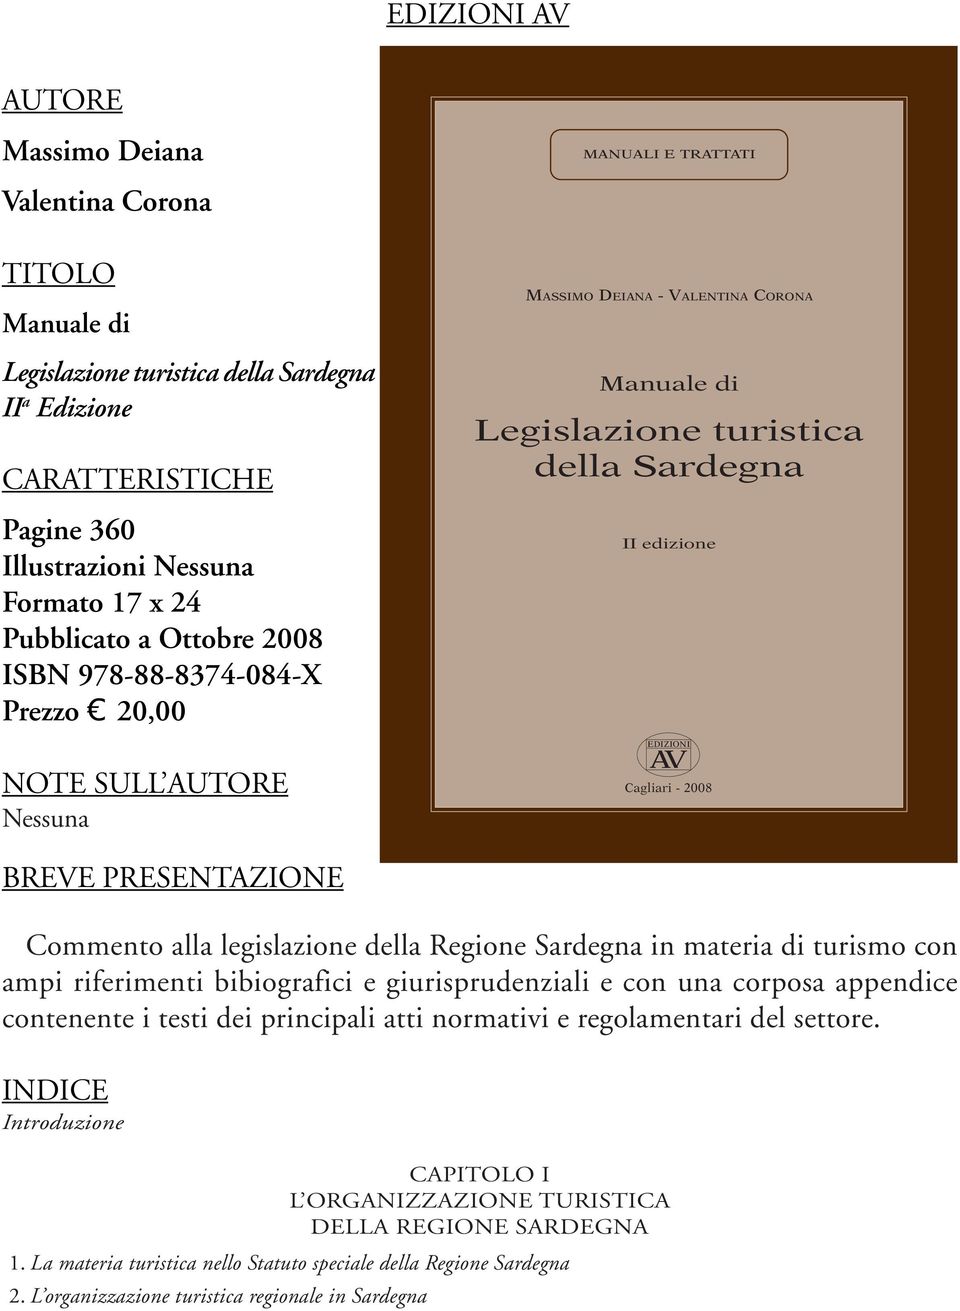 Cagliari - 2008 BREVE PRESENTAZIONE Commento alla legislazione della Regione Sardegna in materia di turismo con ampi riferimenti bibiografici e giurisprudenziali e con una corposa appendice